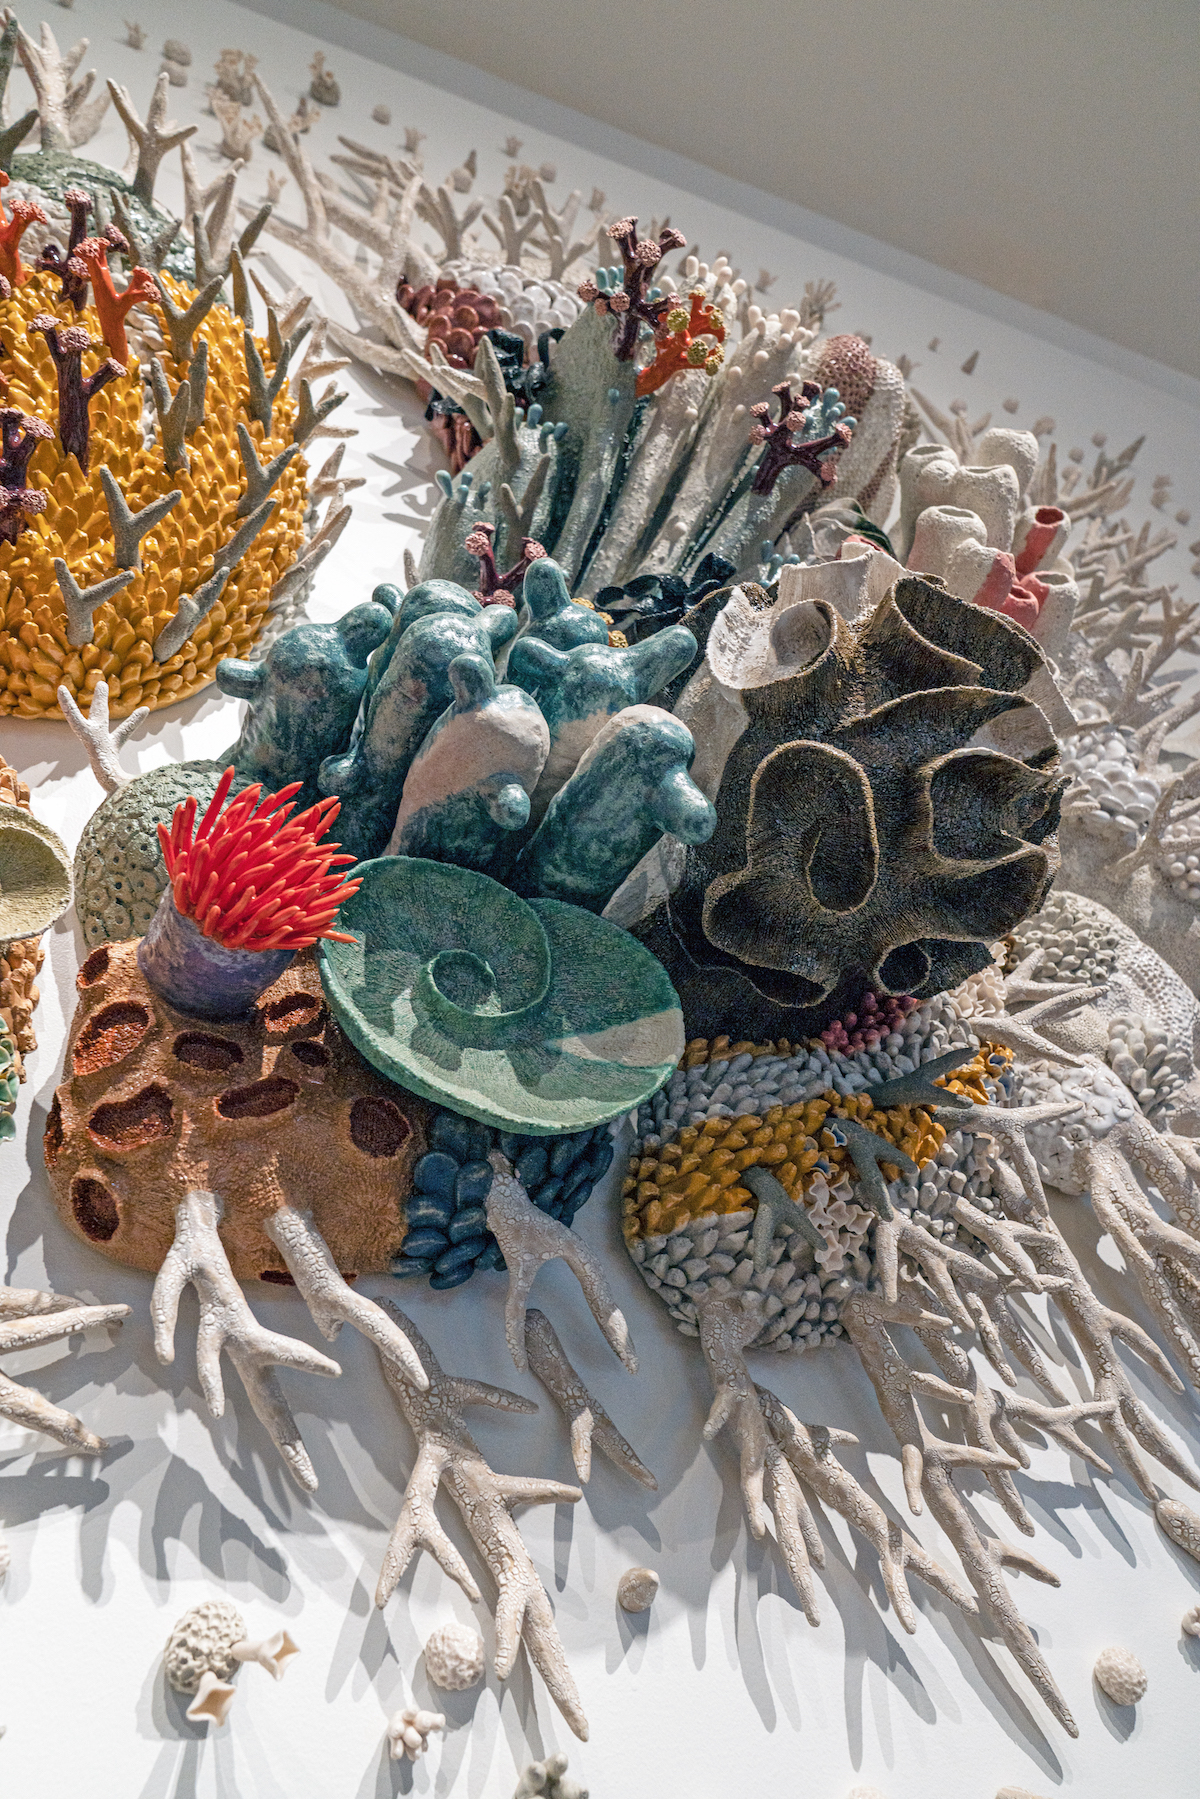 Ceramic Art Installation by Courtney Mattison